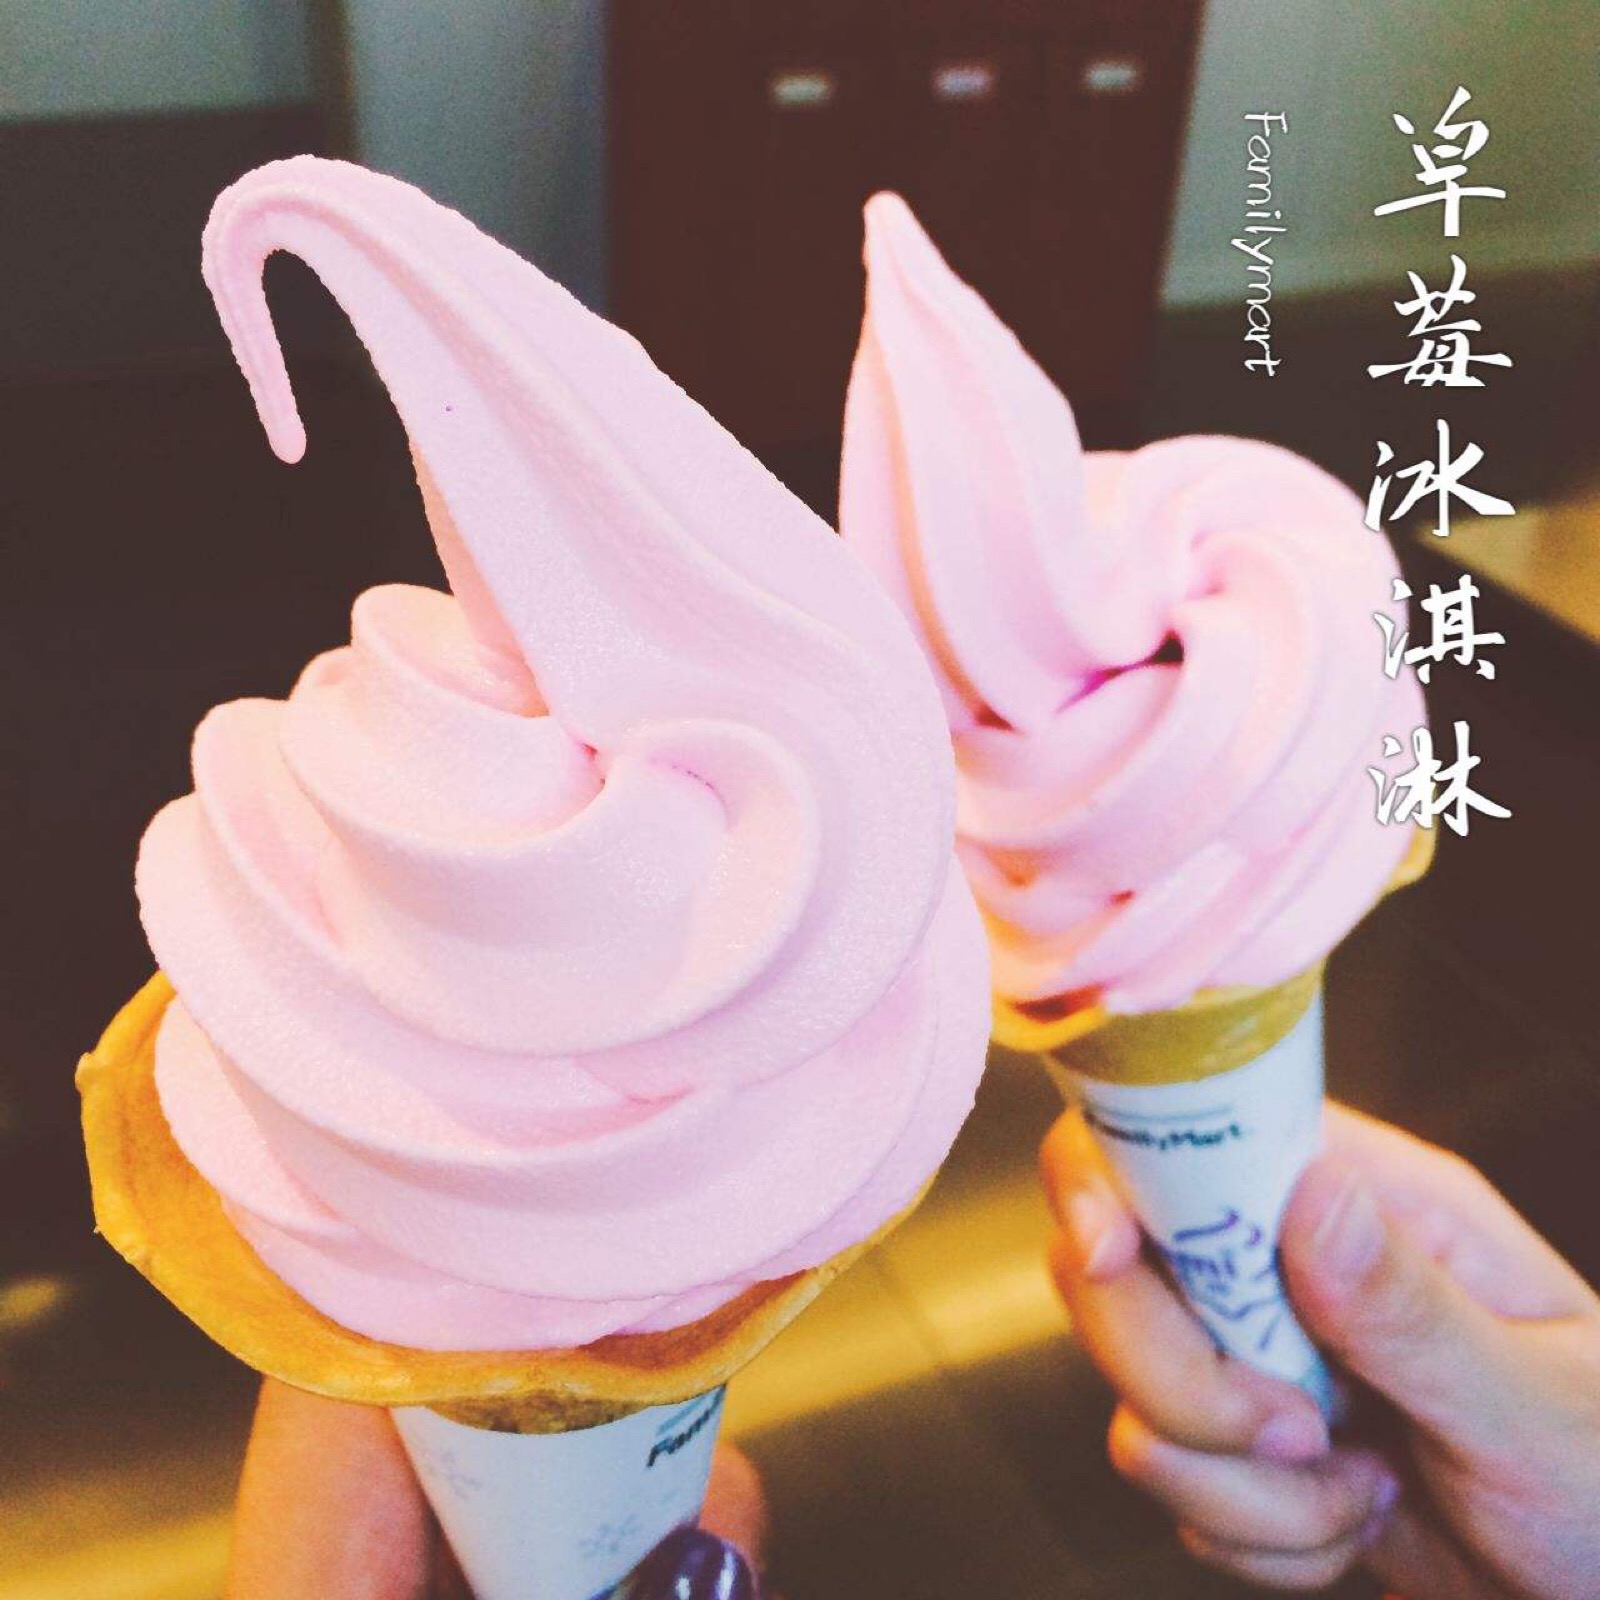 可爱草莓冰淇淋